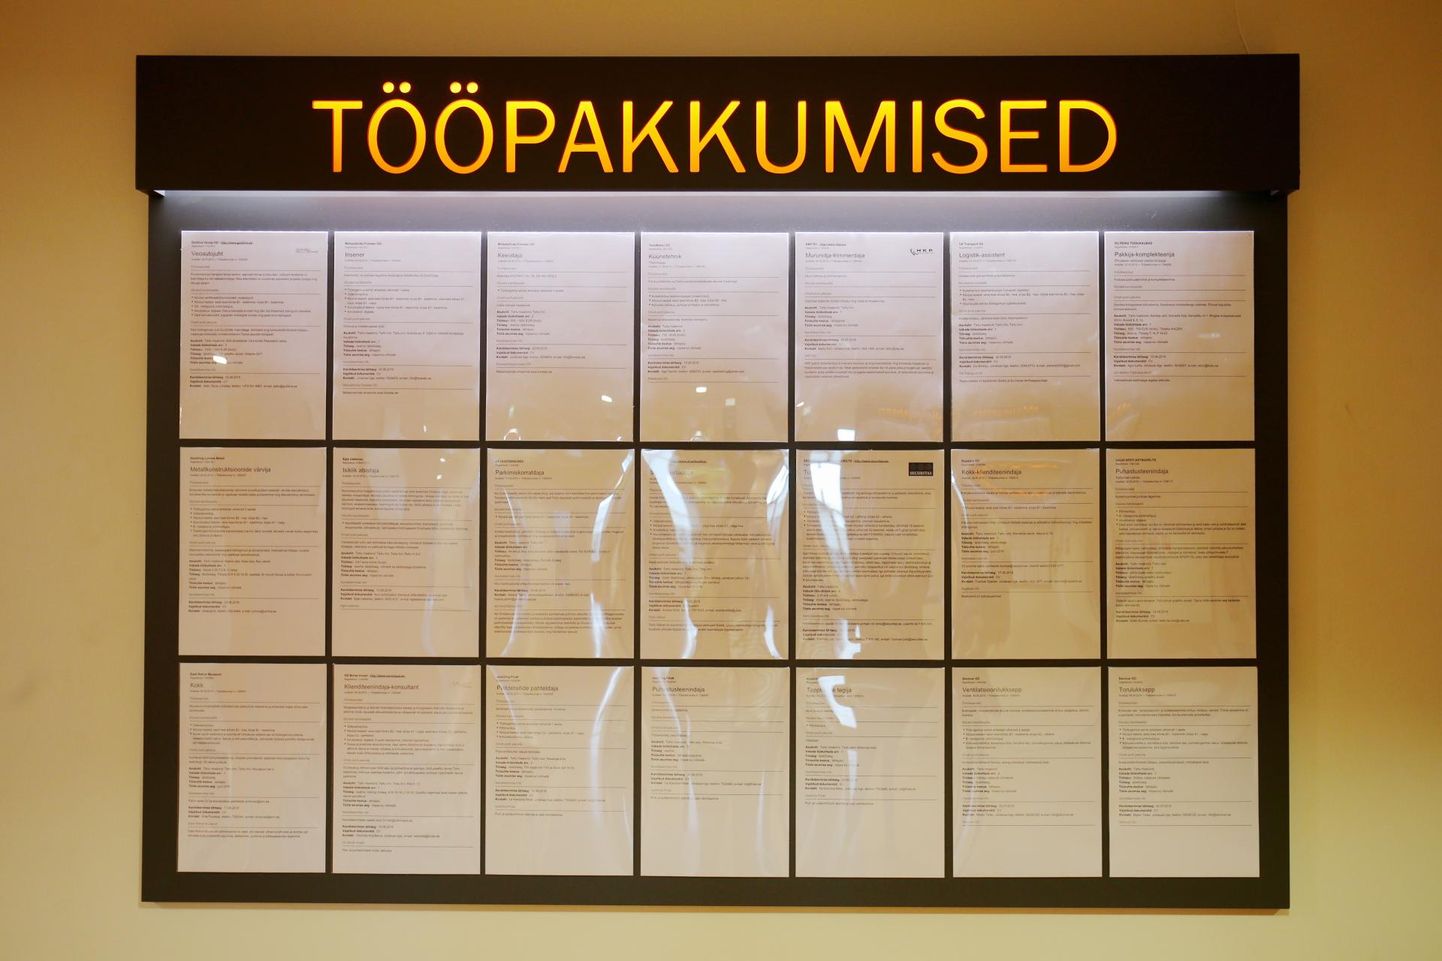 Töötukassa kaudu leiab Pärnumaal tööd enam kui 110 eri ametikohal.